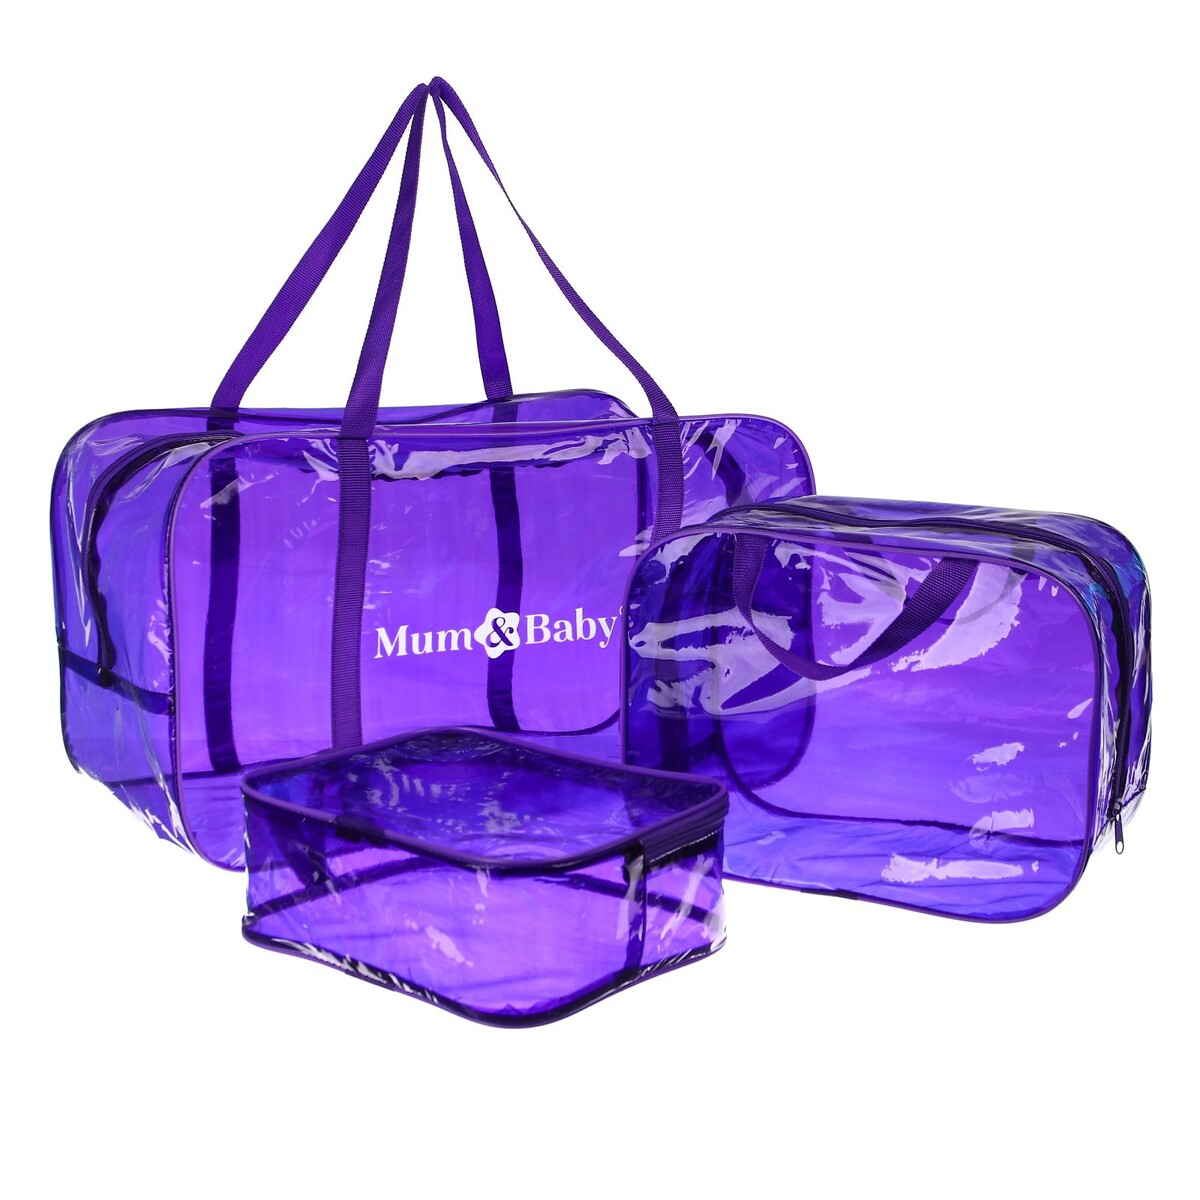 Набор сумок в роддом, 3 шт., цветной пвх, цвет фиолетовый набор для волос фиалка 4 краба 4 резинки бантик розово фиолетовый 6 шт